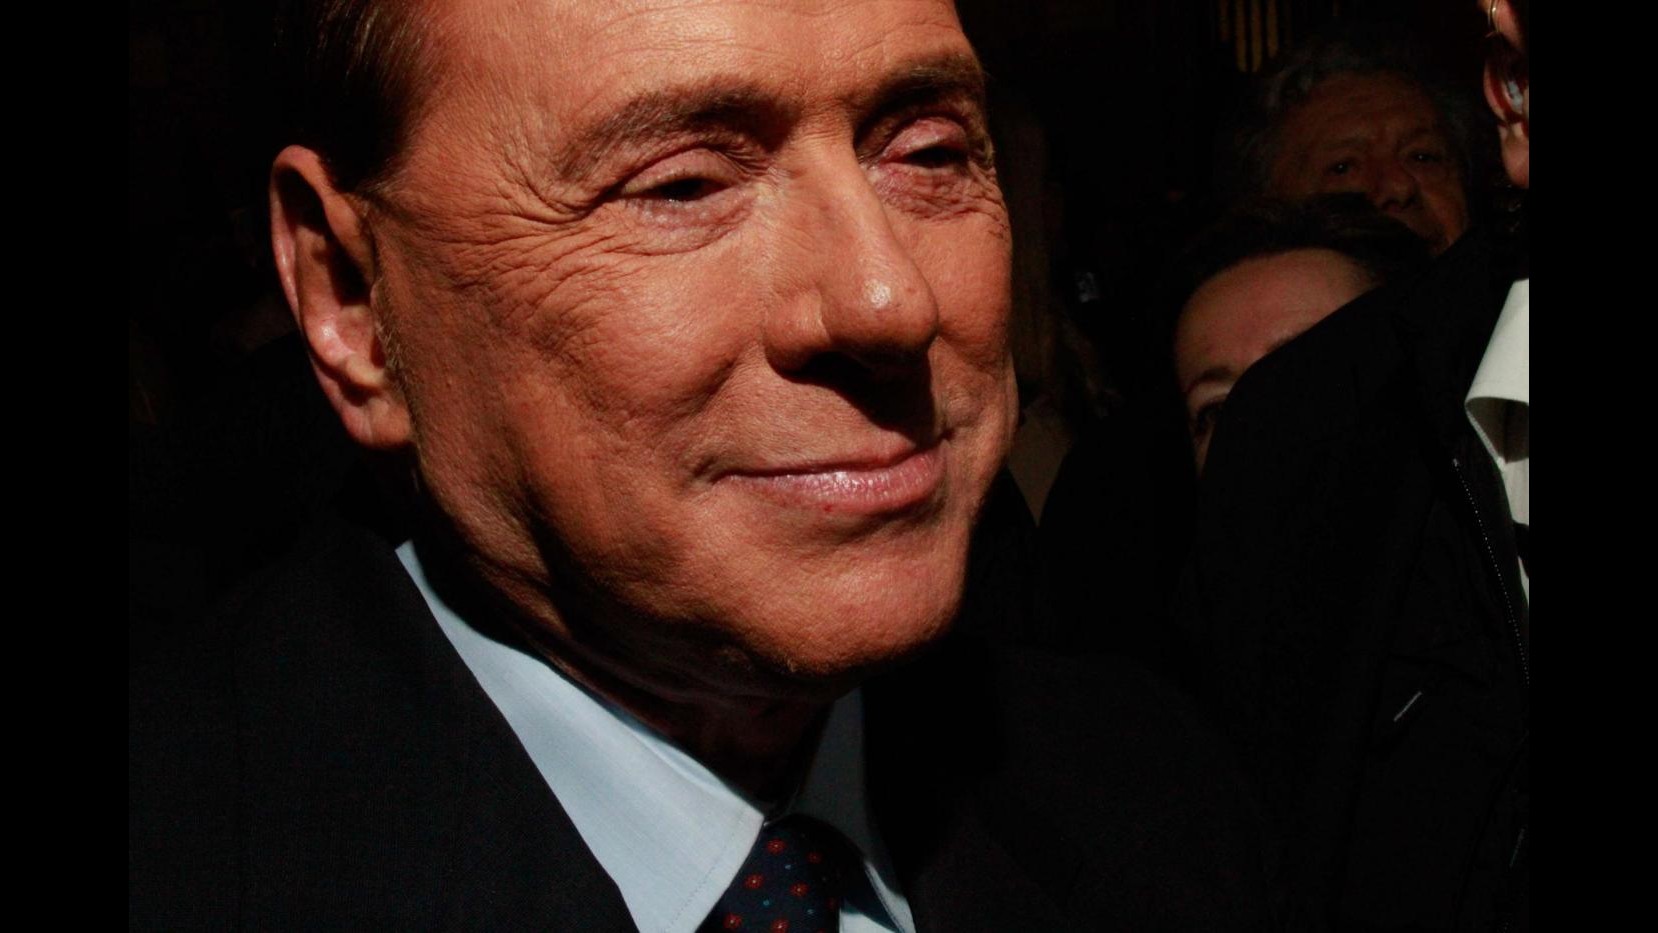 Quirinale, Berlusconi a Palazzo Chigi per incontro con Renzi